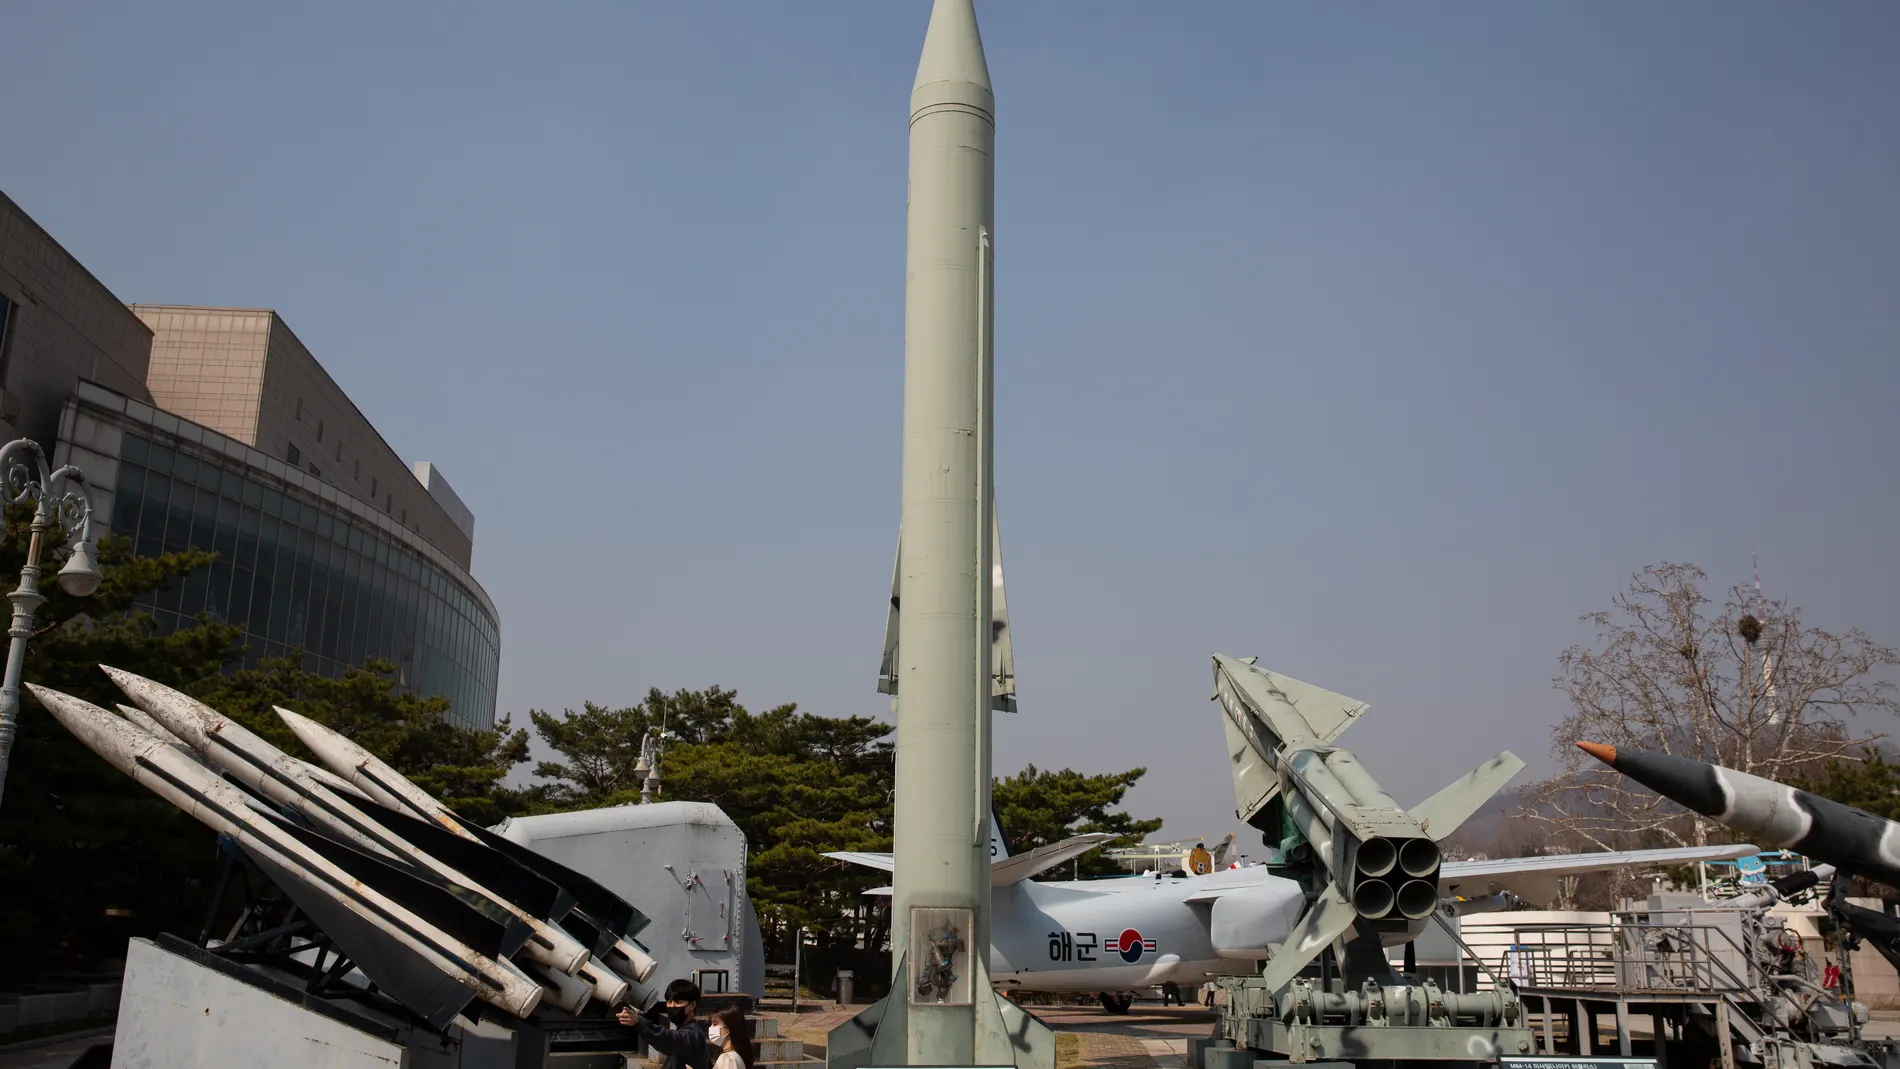 Un misil balístico táctico Scud-B (C) norcoreano en exhibición en el Museo Conmemorativo de la Guerra de Corea en Seúl